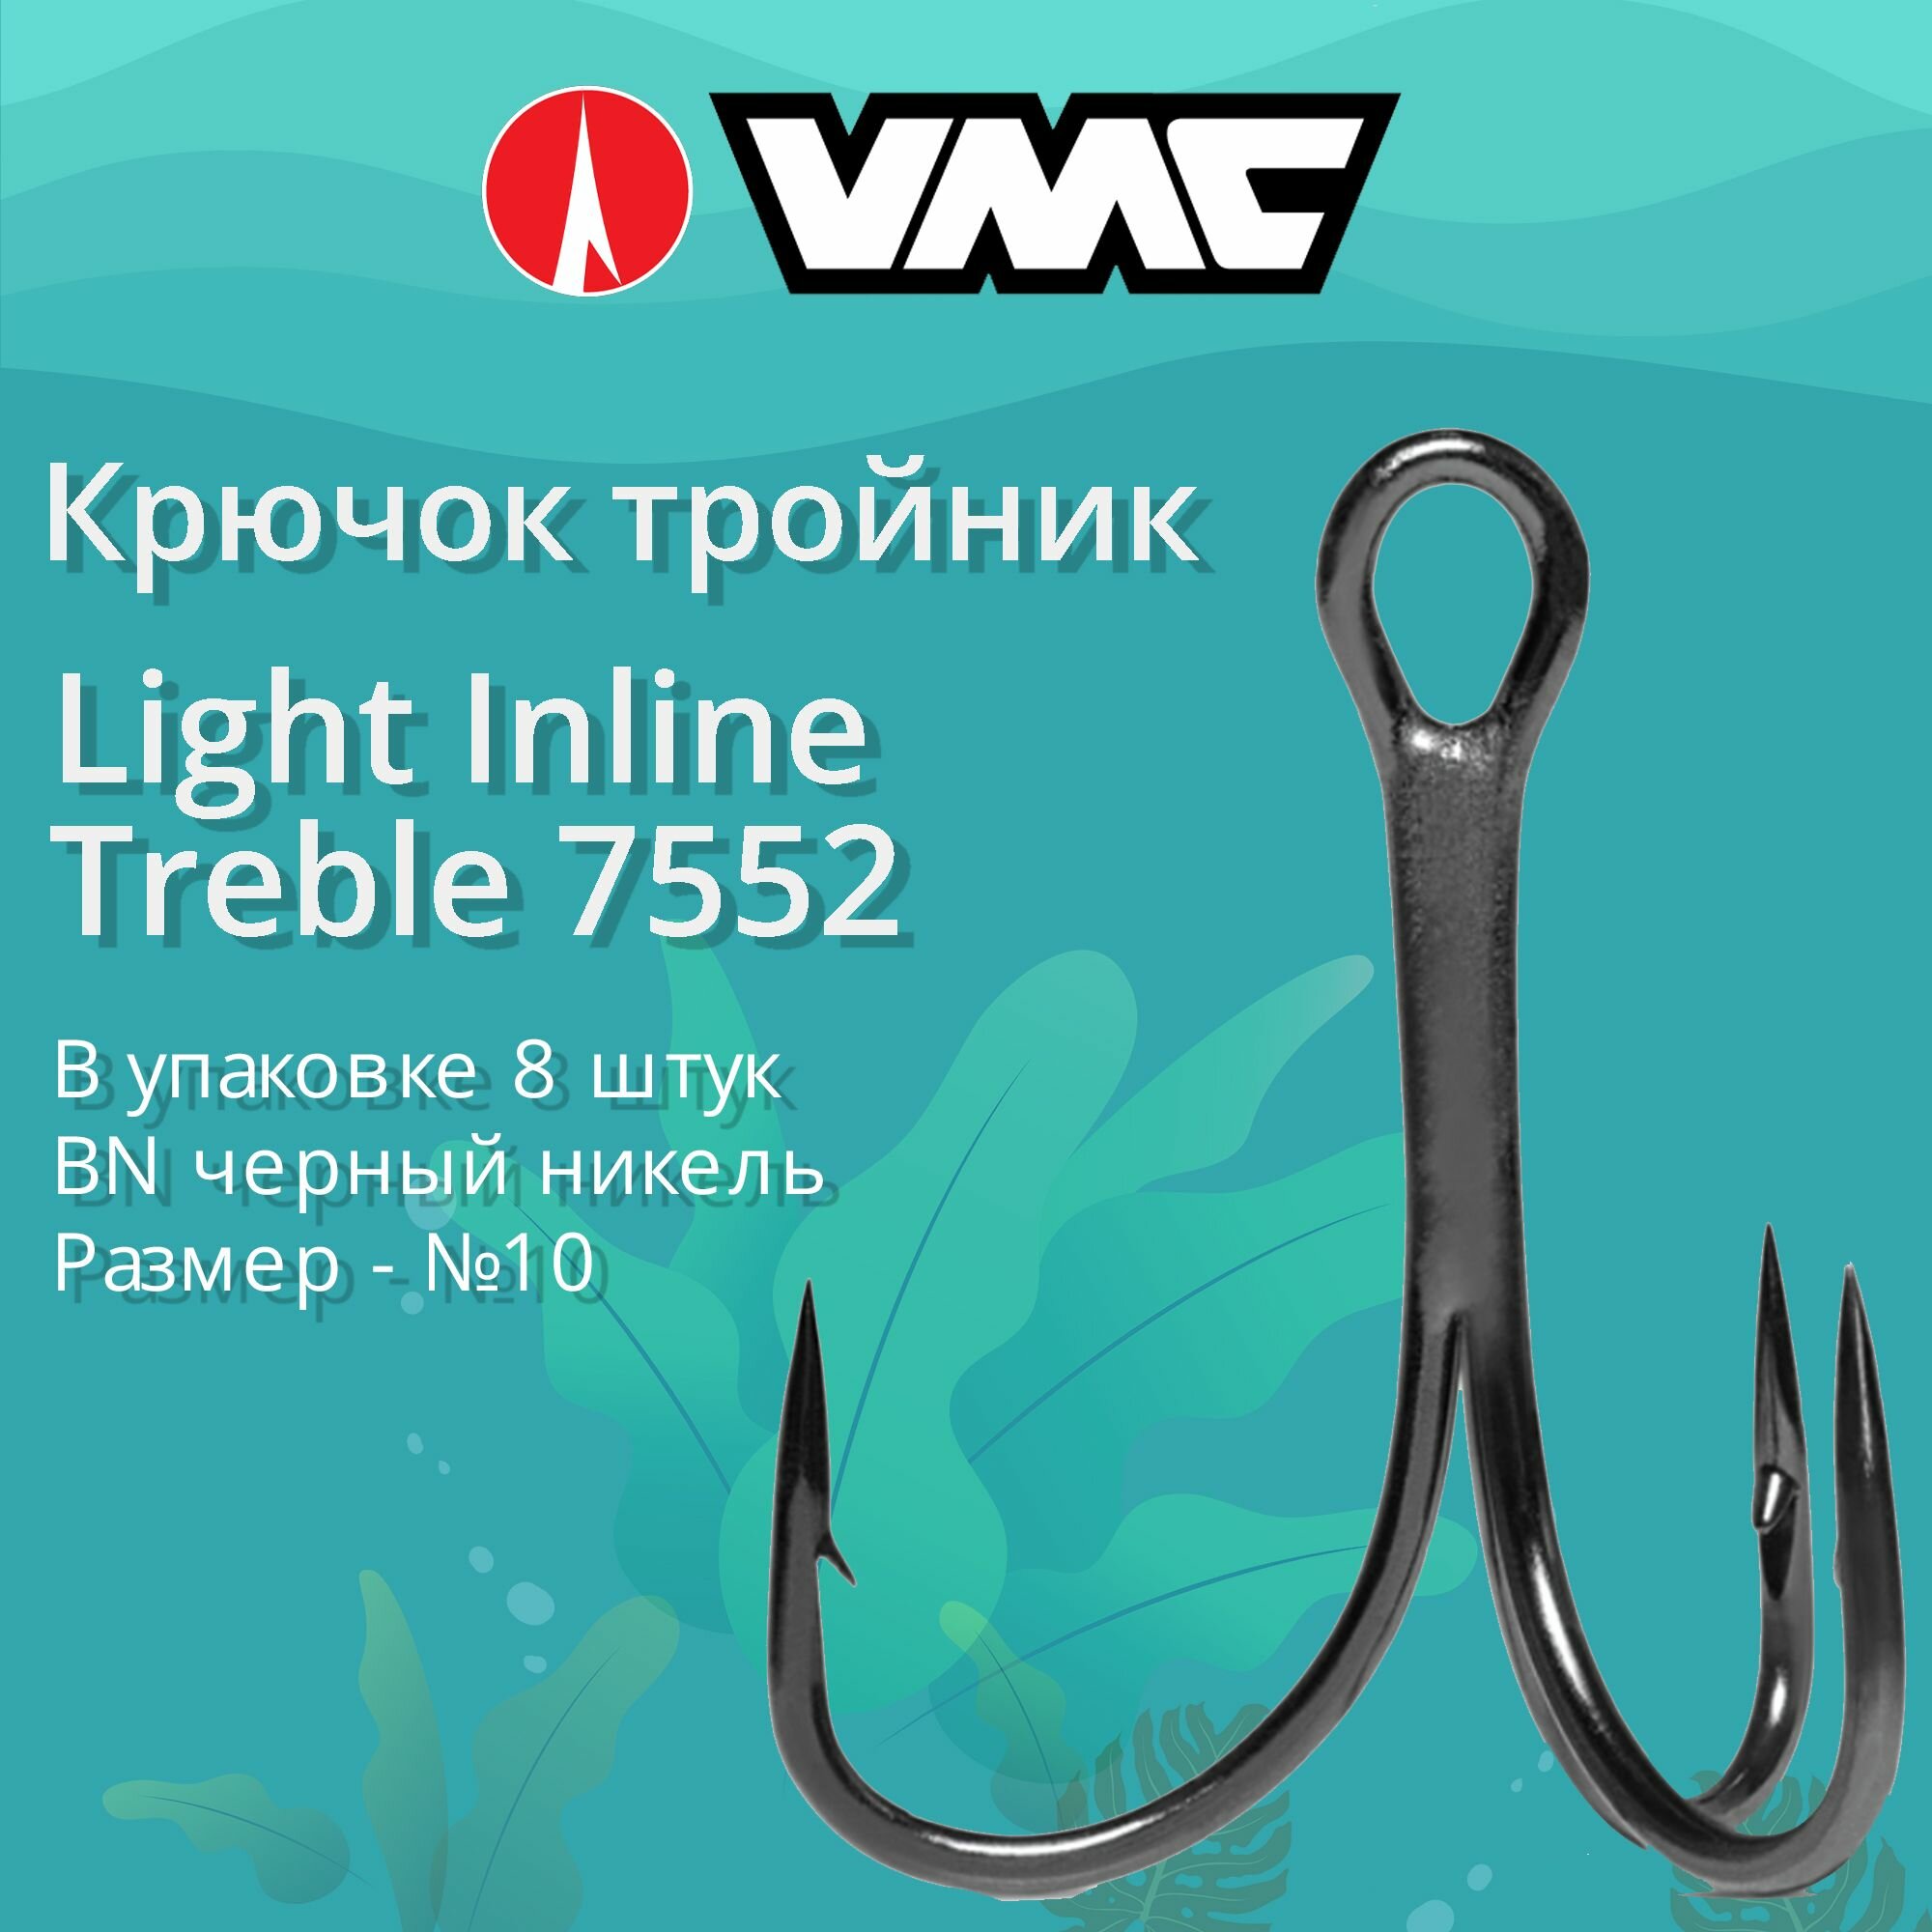 Крючки для рыбалки (тройник) VMC Light Inline Treble 7552 BN (черн. никель) №10 (упаковка 8 штук)